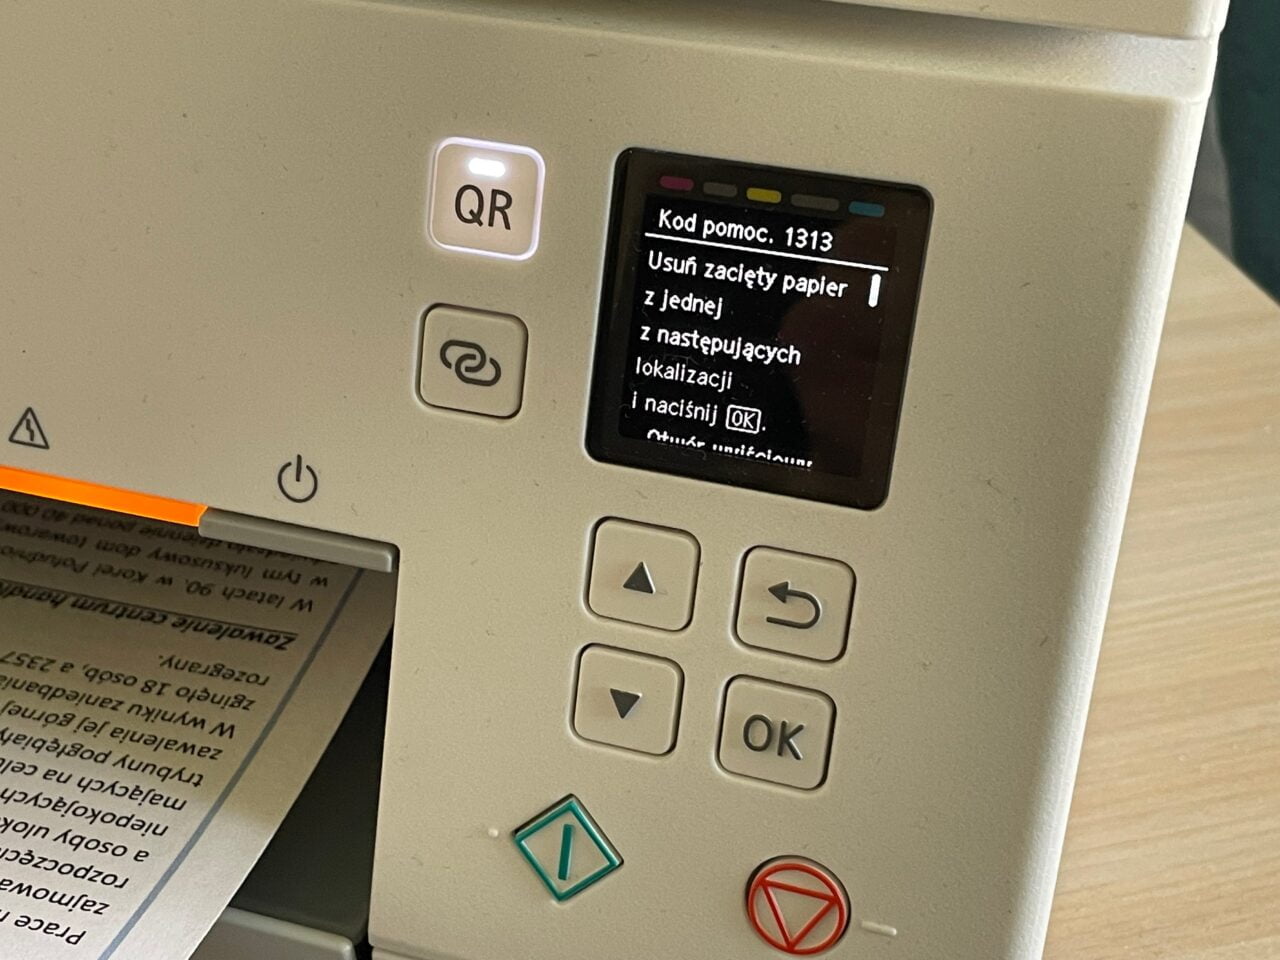 Ekran urządzenia z przyciskami, wyświetlający komunikat błędu o zakleszczeniu papieru i kodzie pomocy 1313.